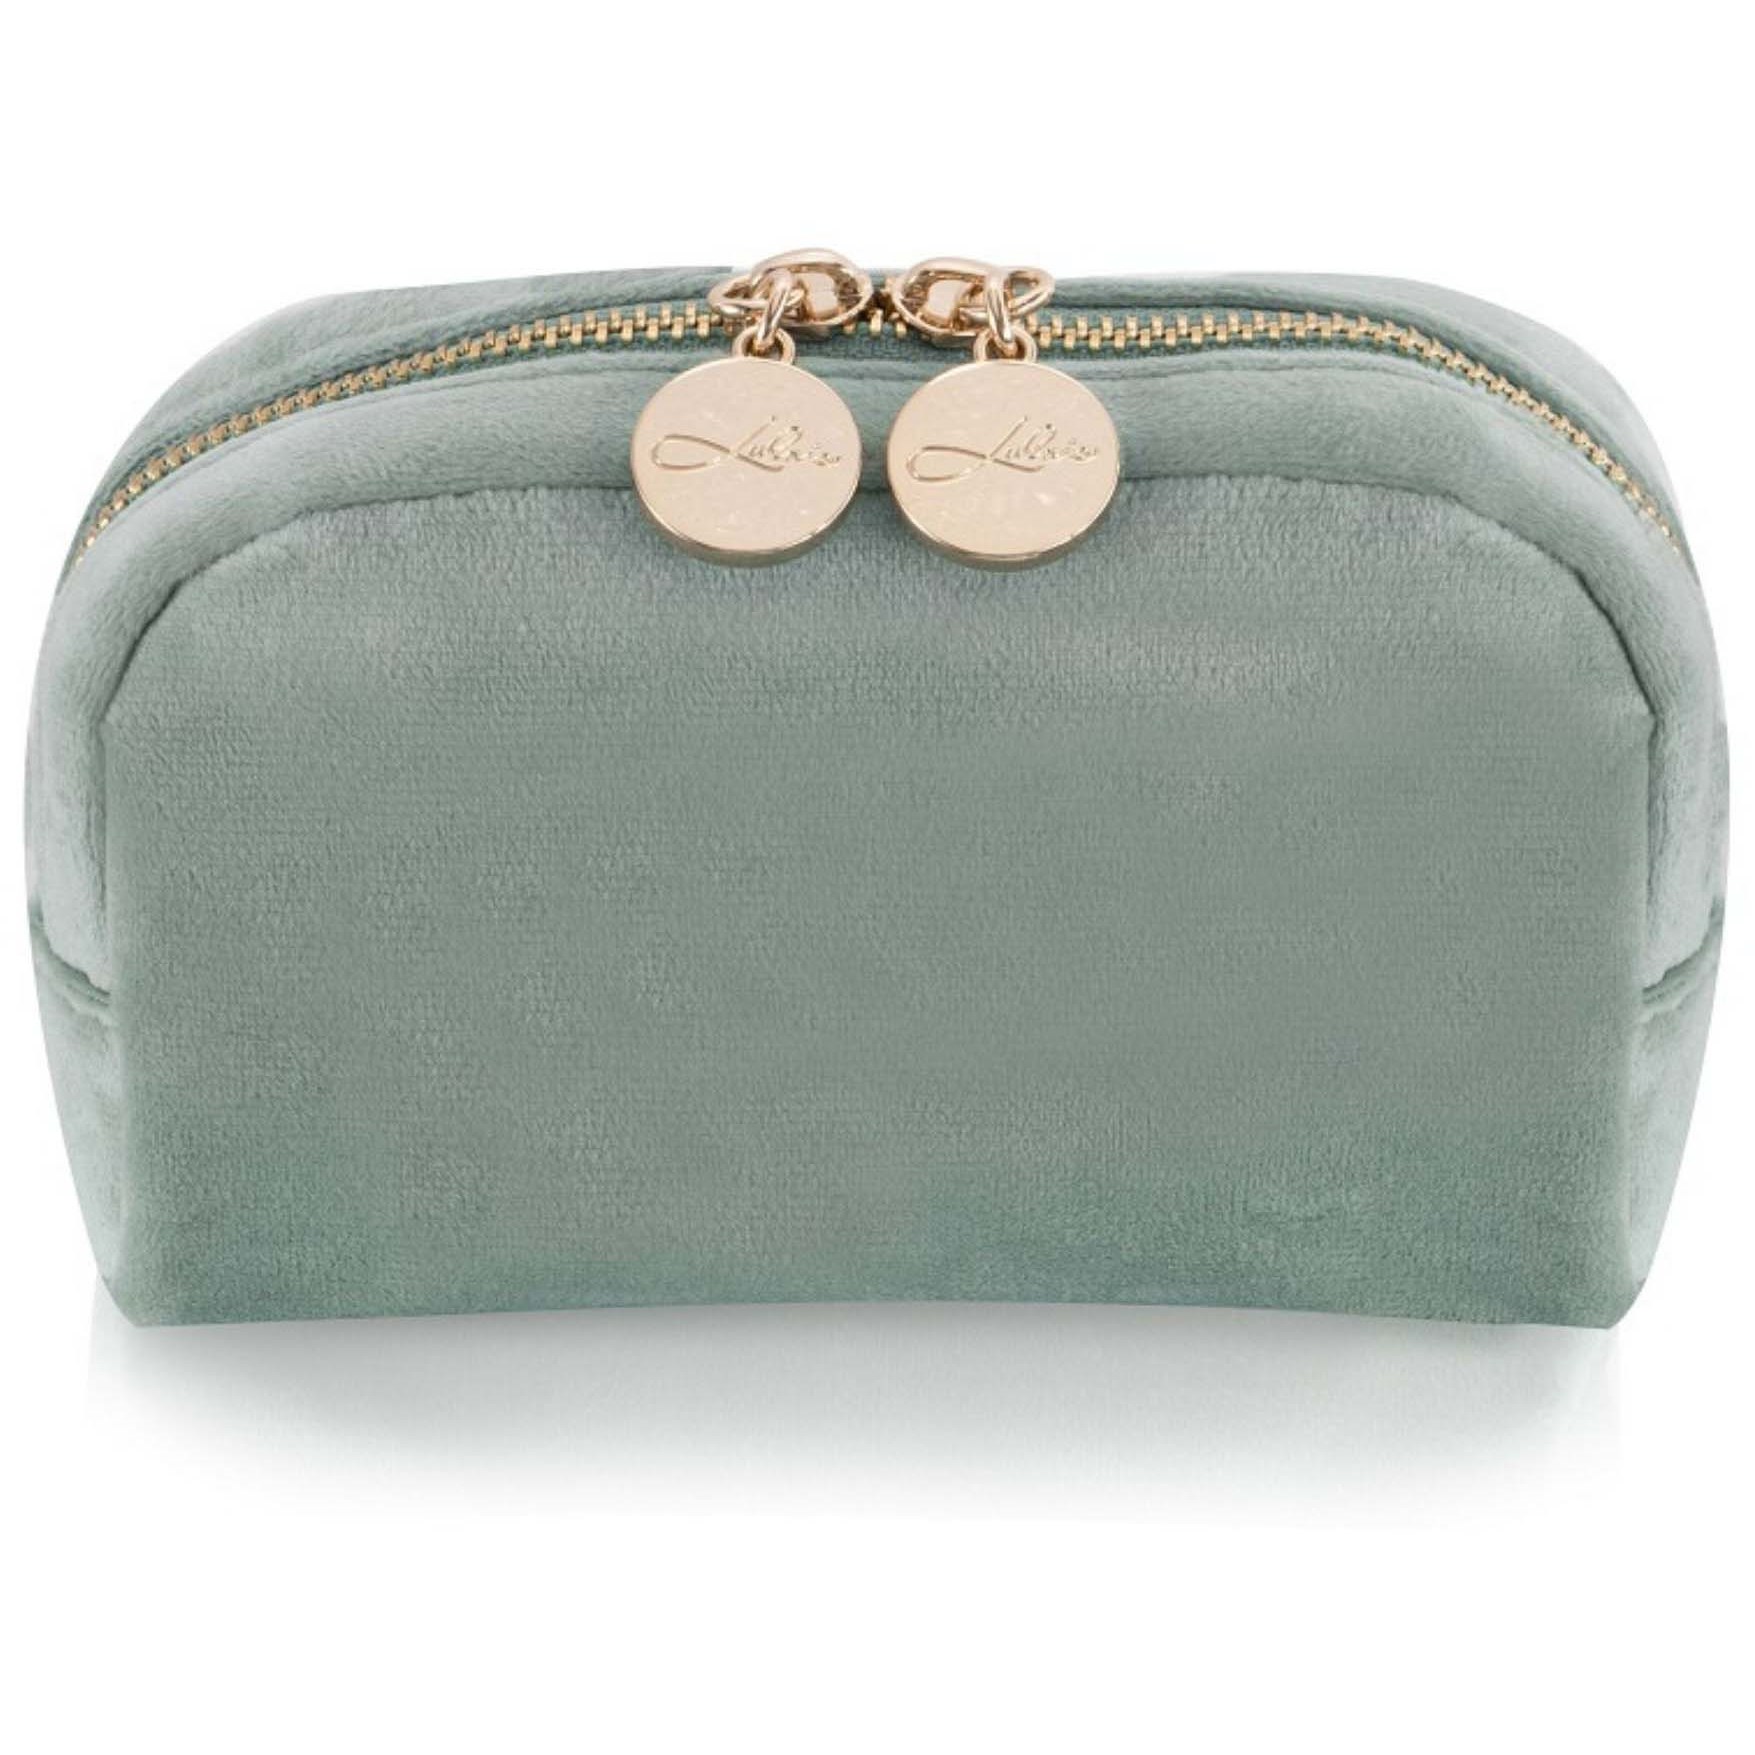 Bilde av Lulu's Accessories Cosmetic Bag Small Velvet Mint